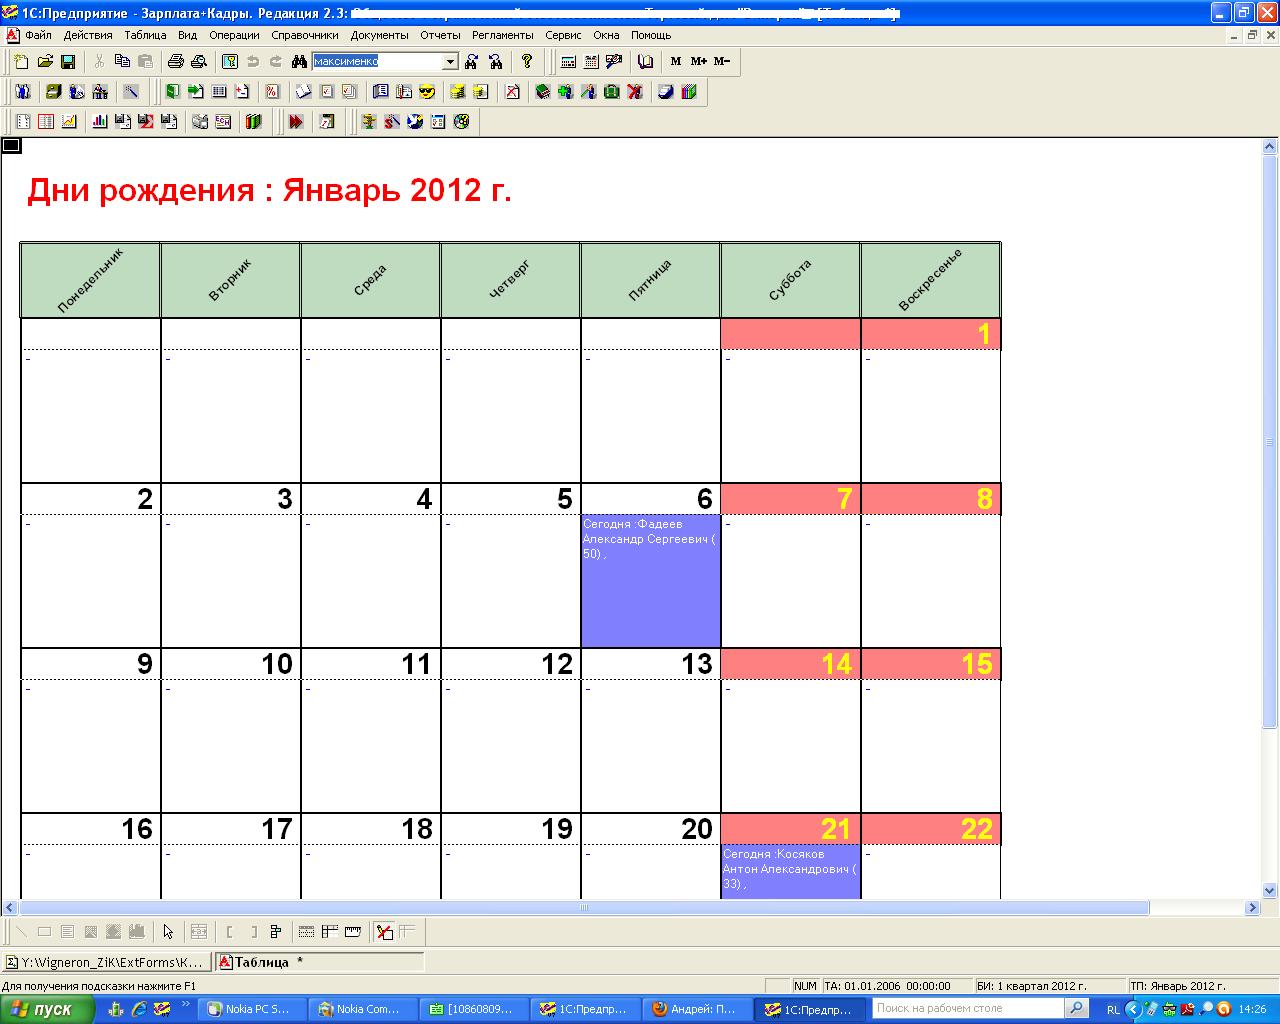 Как управлять днями рождения в календаре - Android - Cправка - Google Календарь